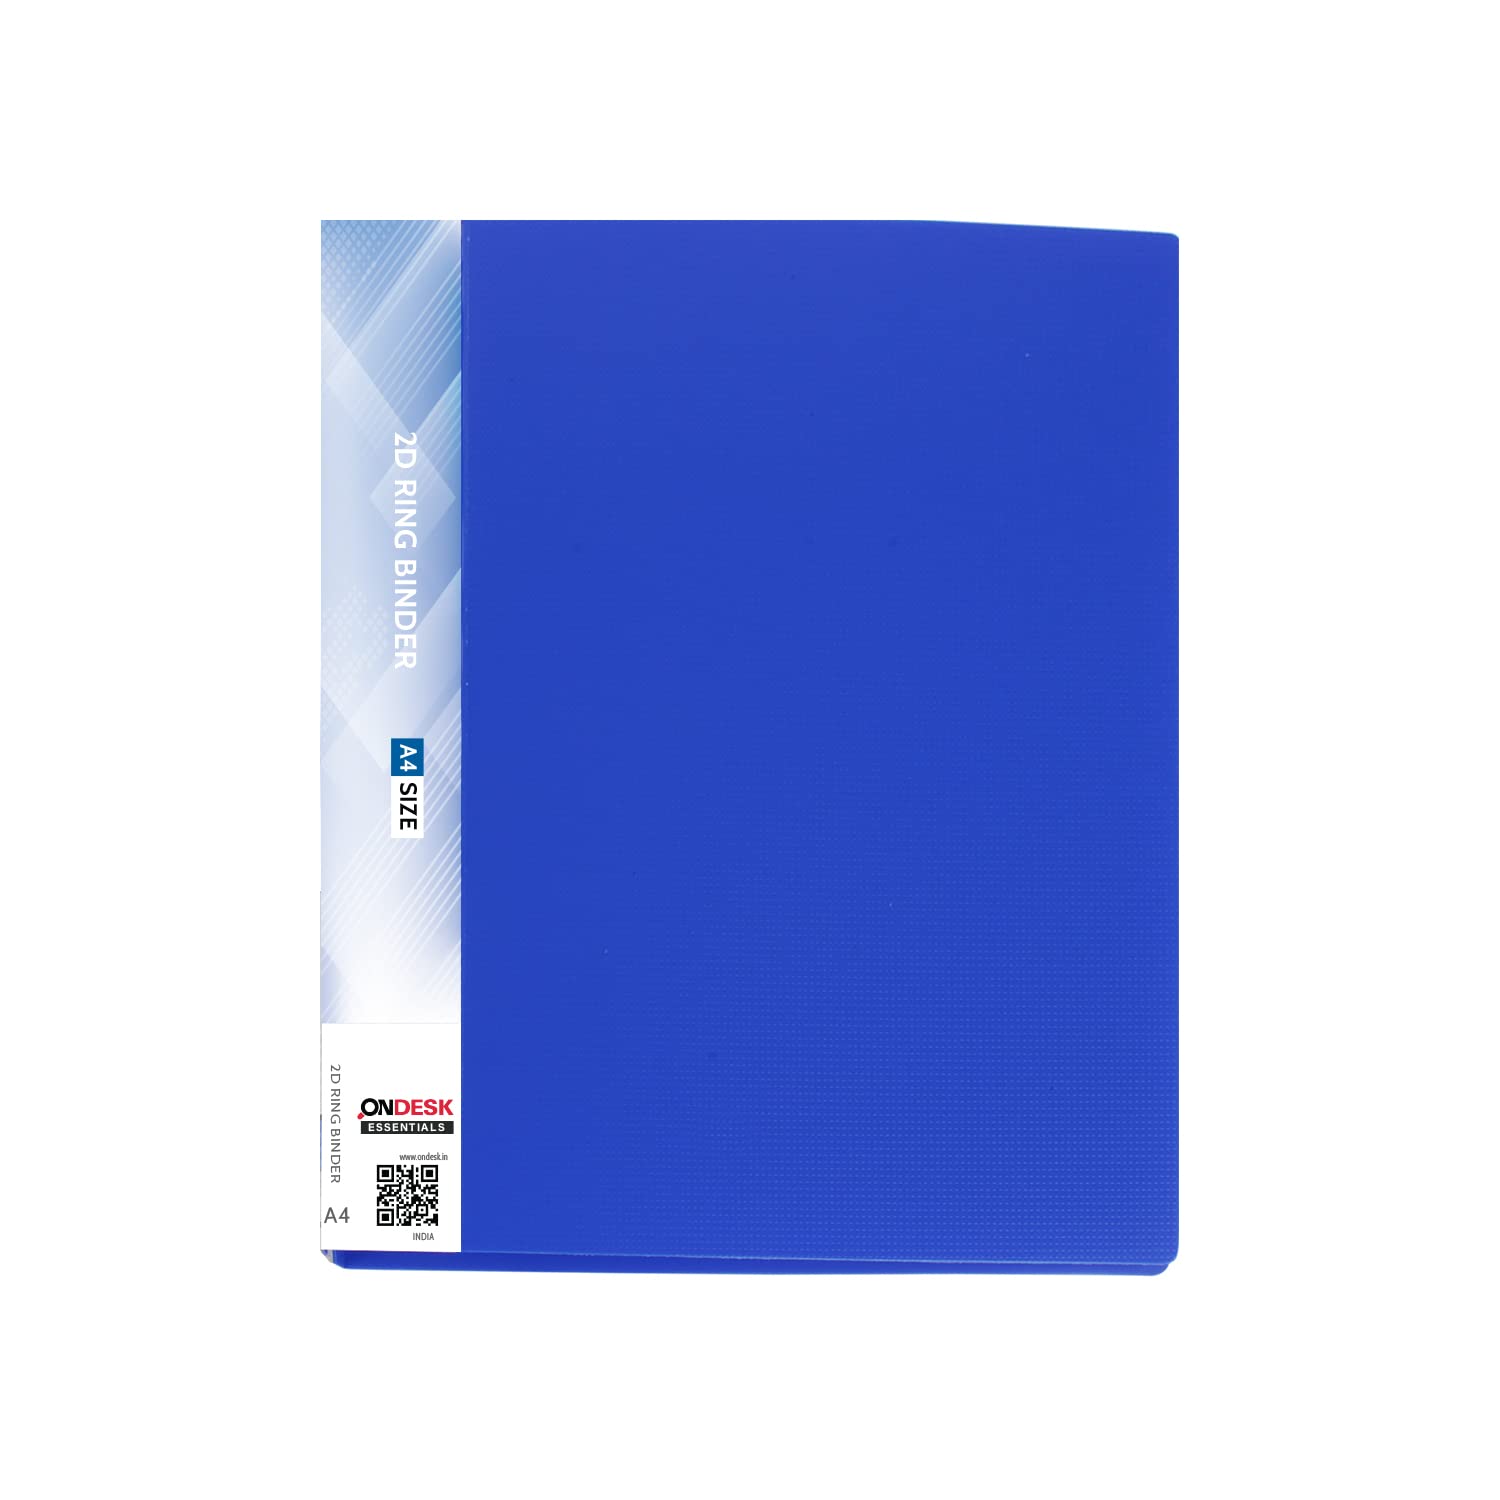 Anhui Sunshine Stationery Co., Ltd - Product Categories - File Folder  Series - File Folder Pocket/Clear Book